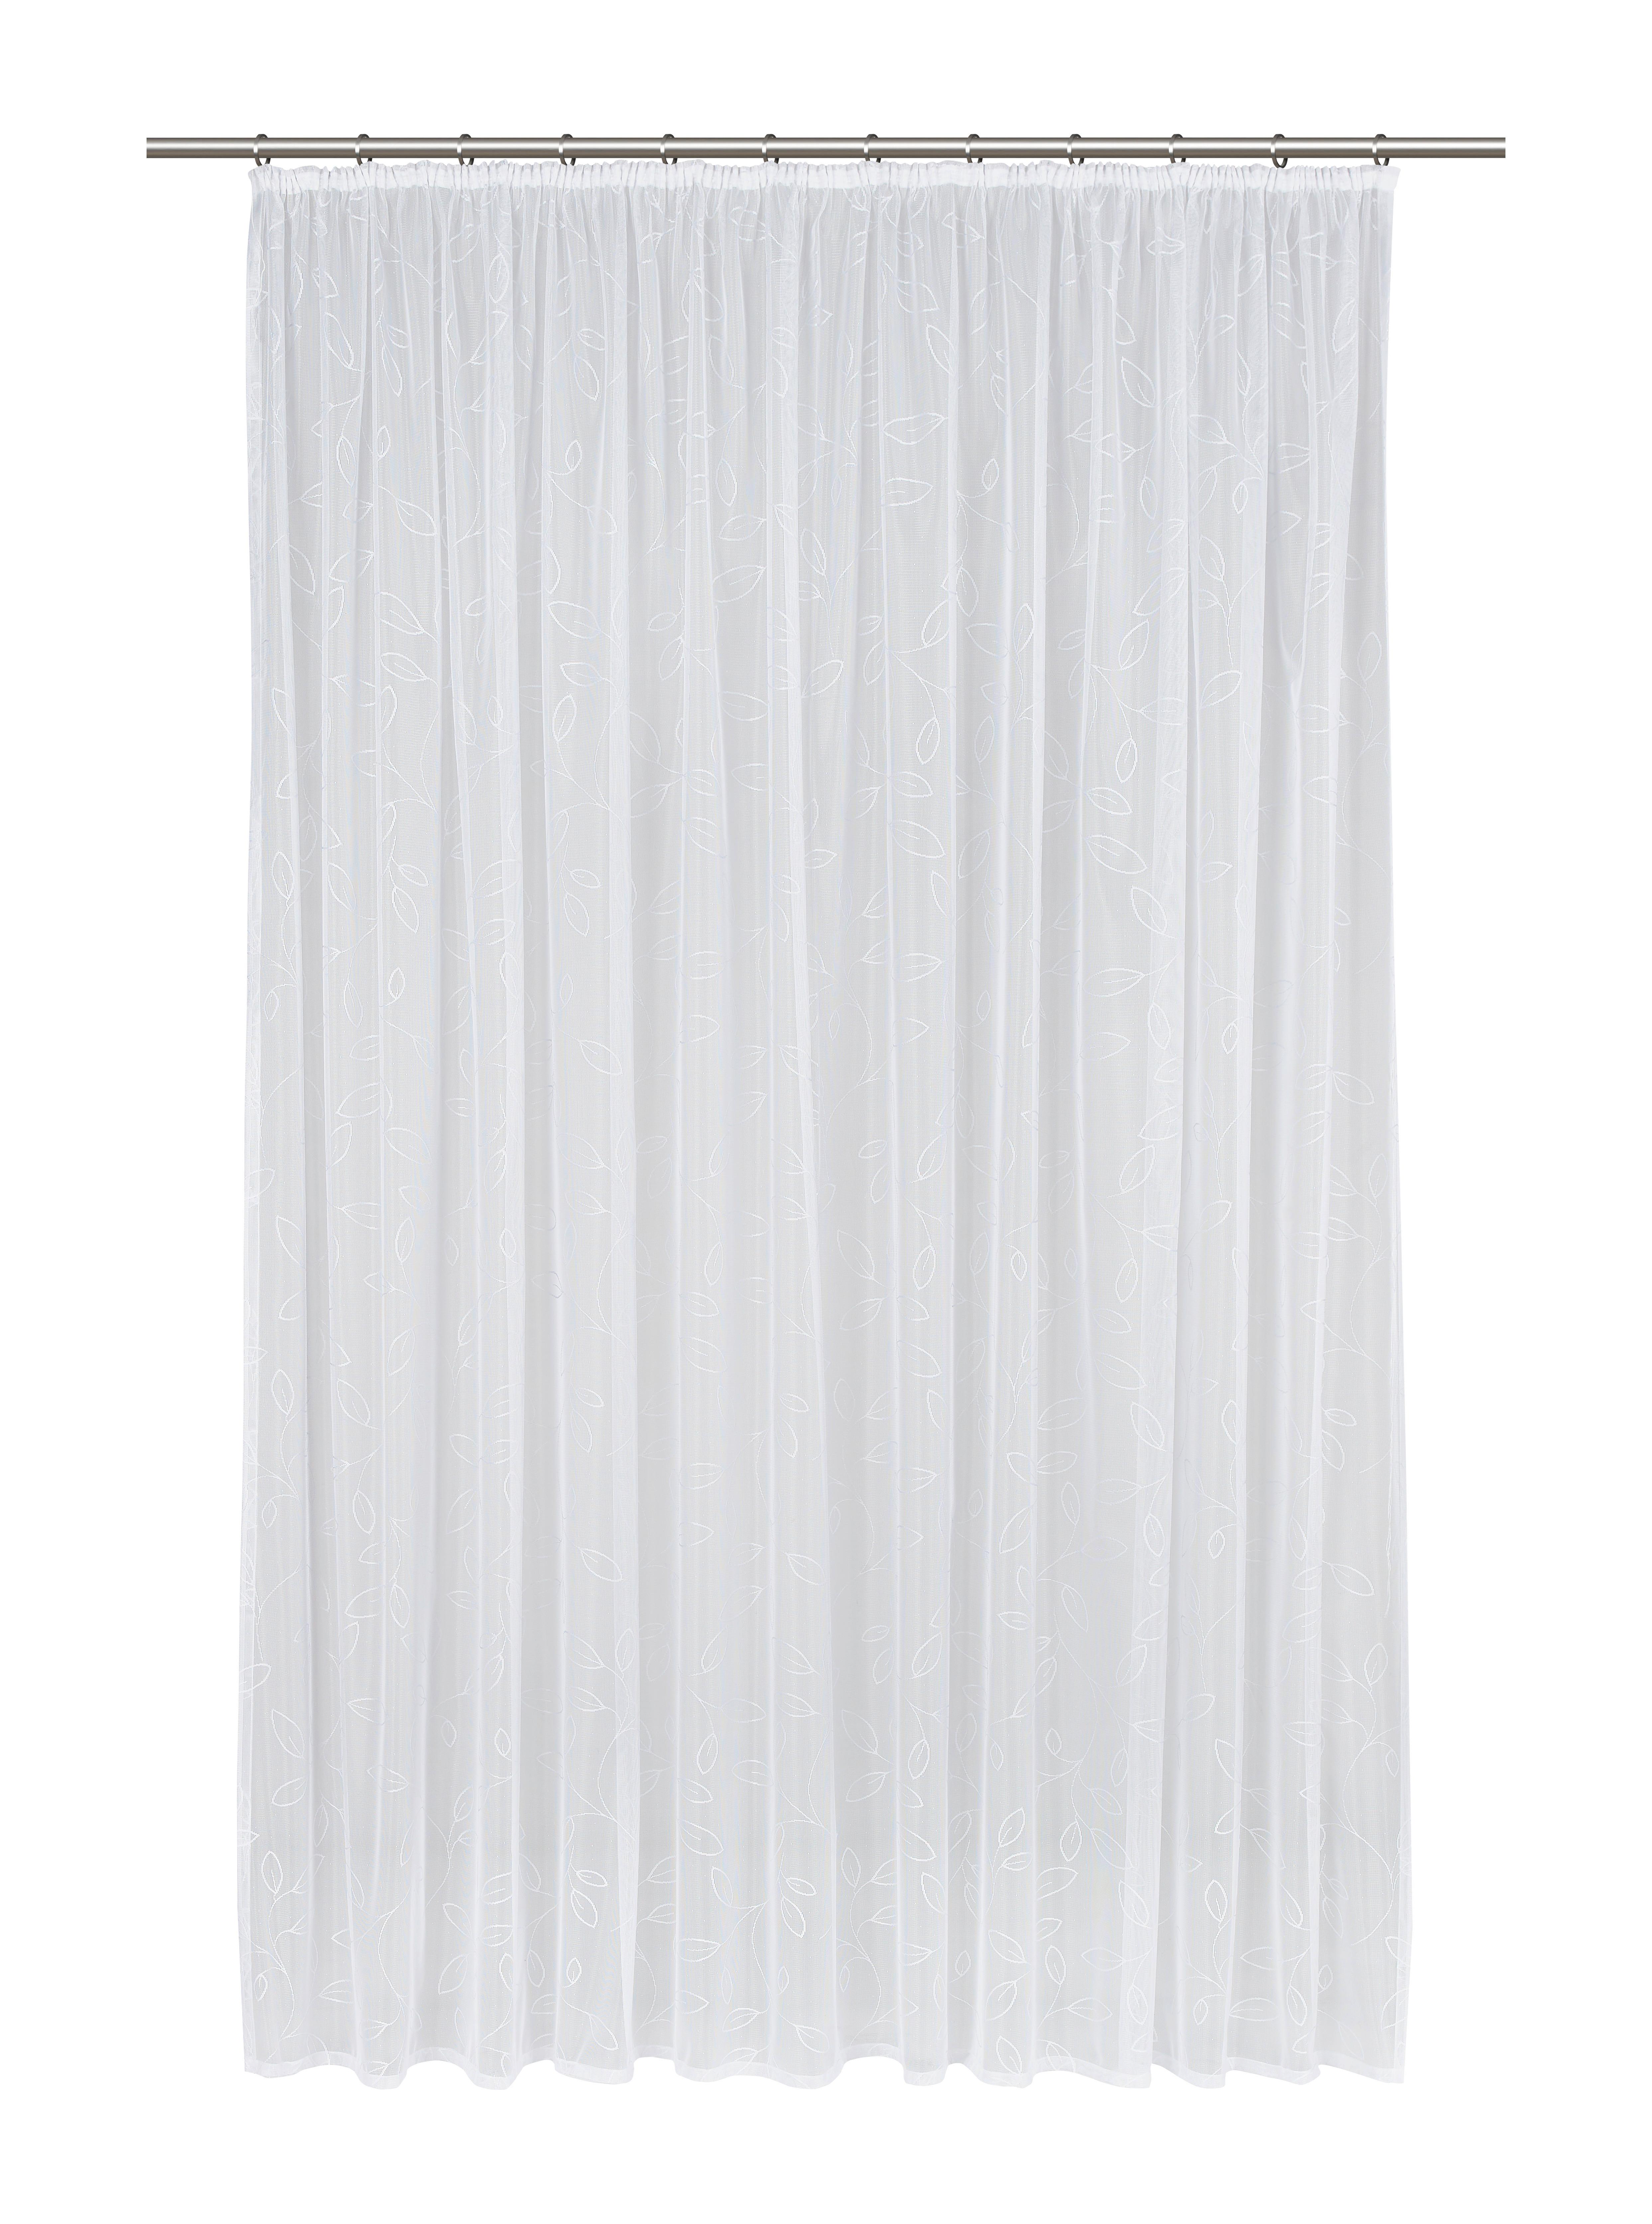 Kusová Záclona Flower Store 3, 300/245cm - biela, Konvenčný, textil (300/245cm) - Modern Living